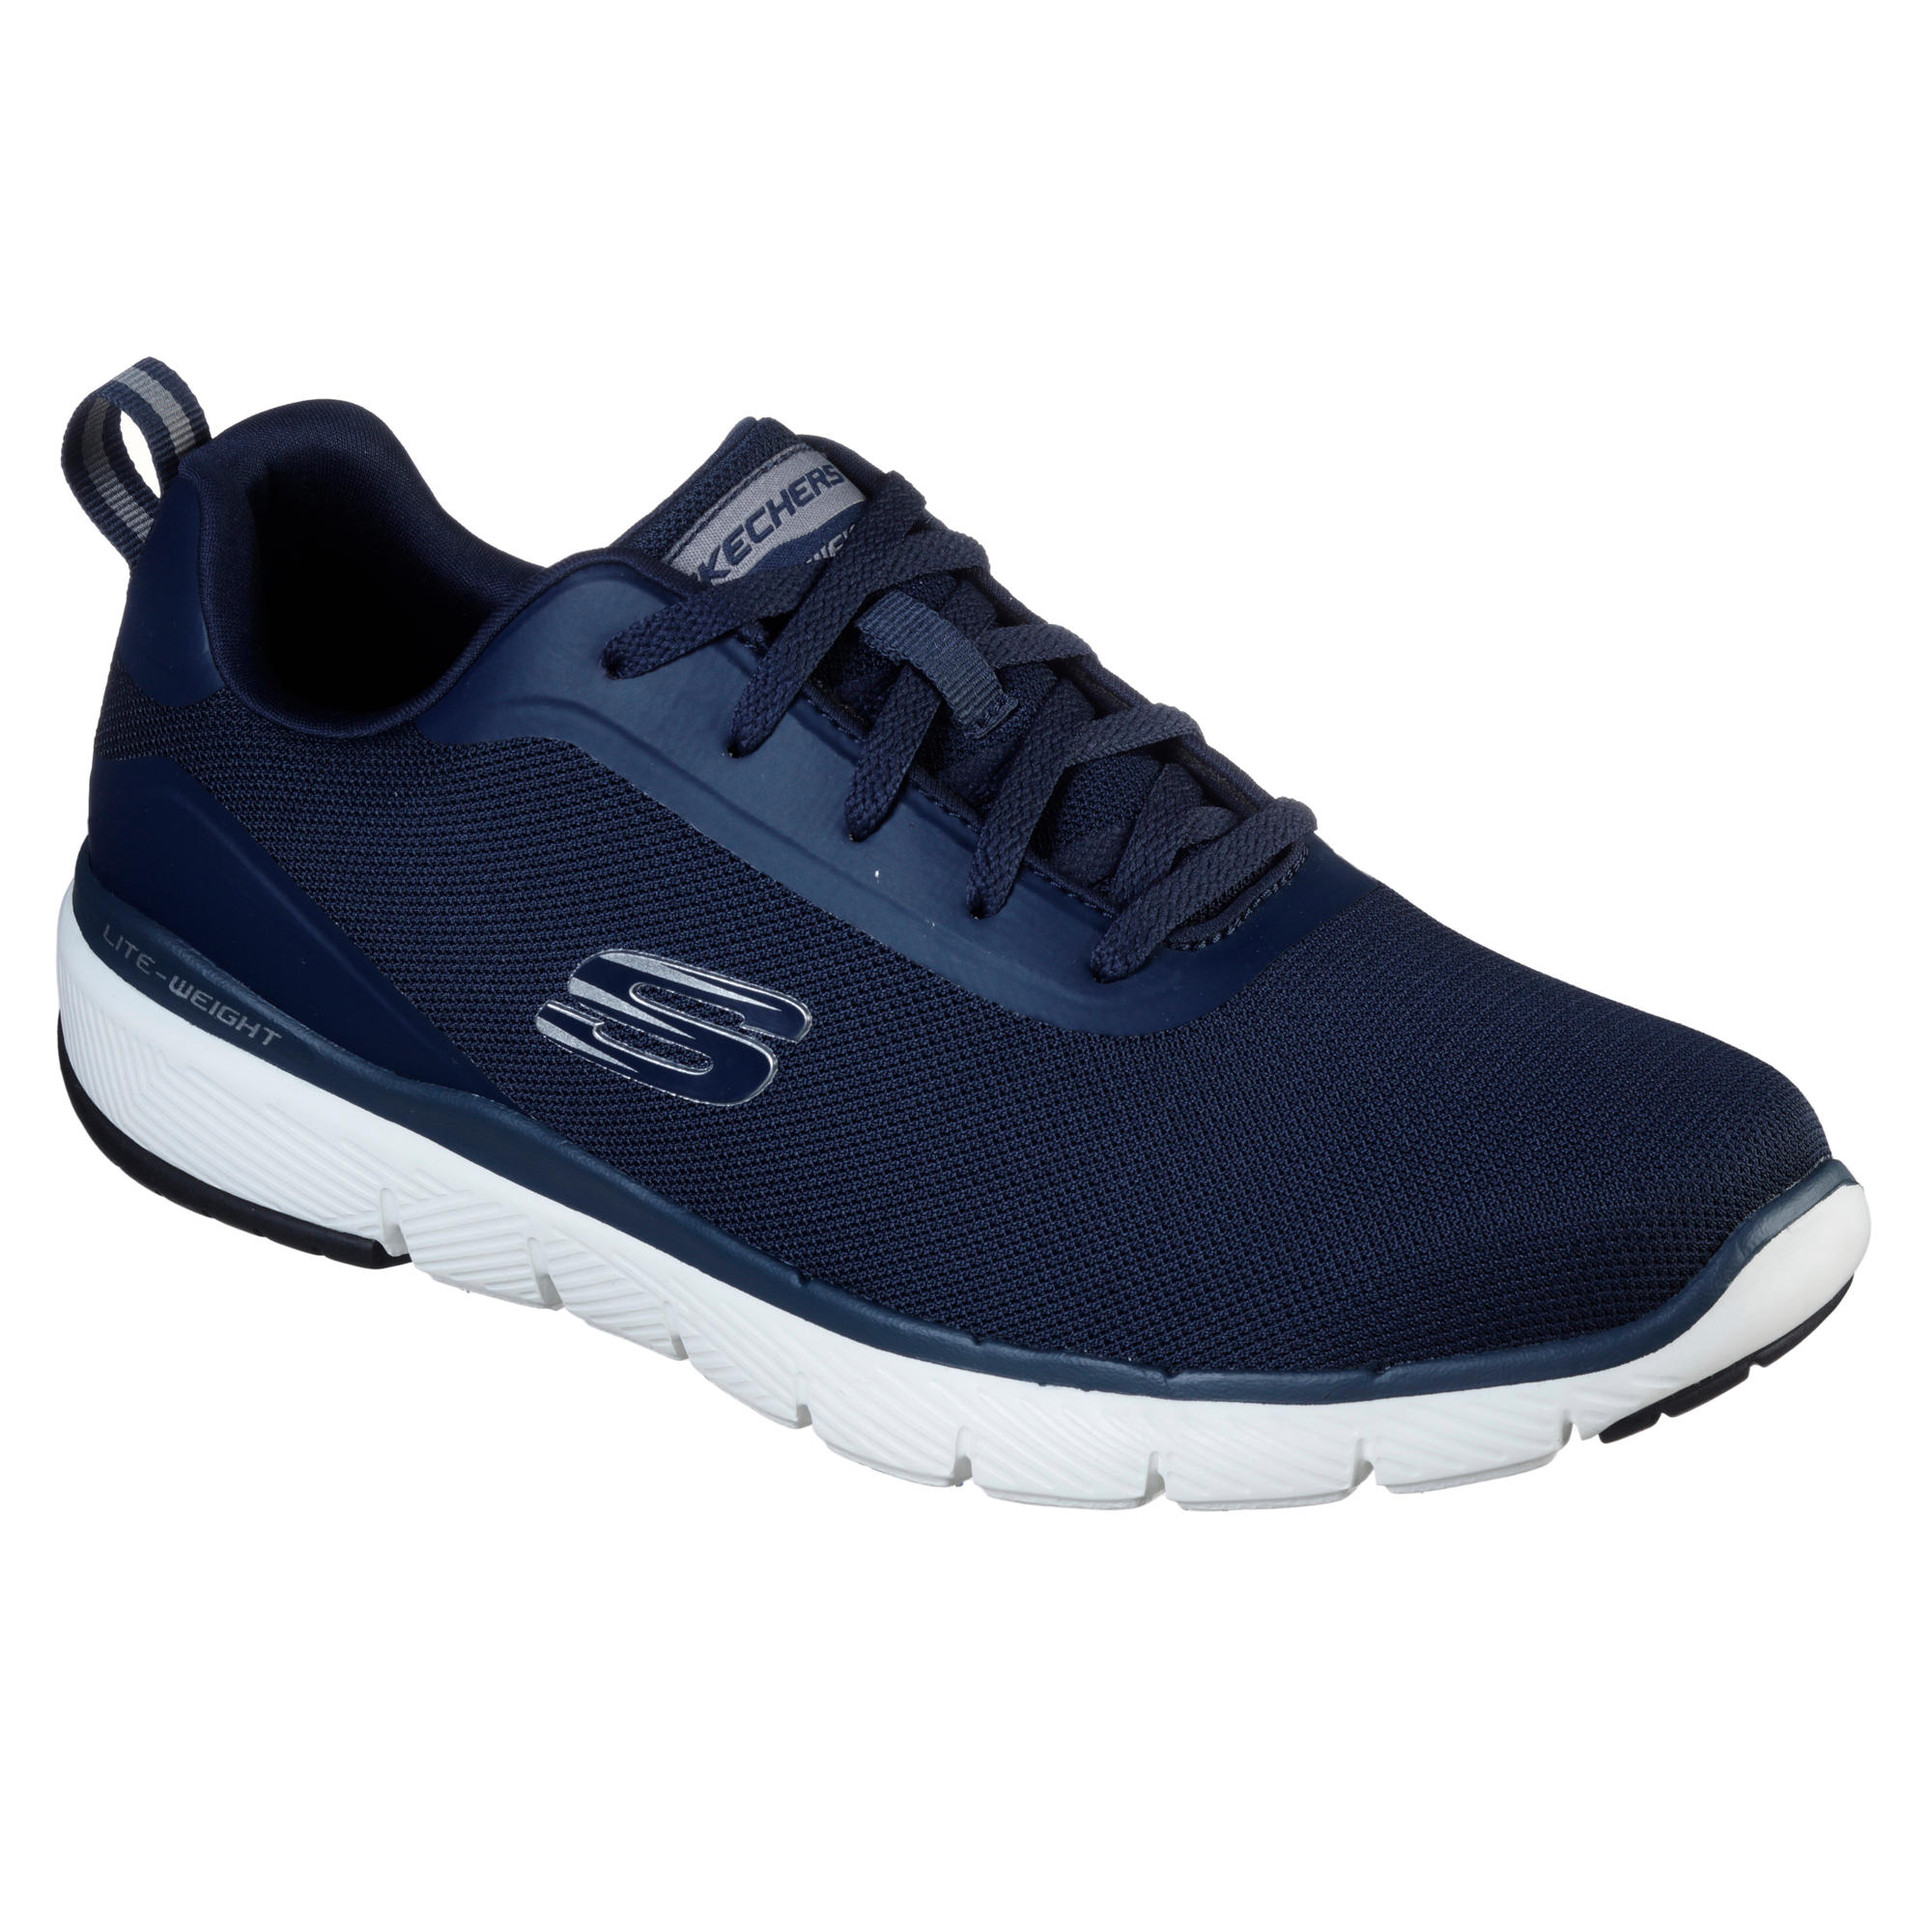 Skechers Men's Fitness Walking Shoes Flex Appeal - Blue